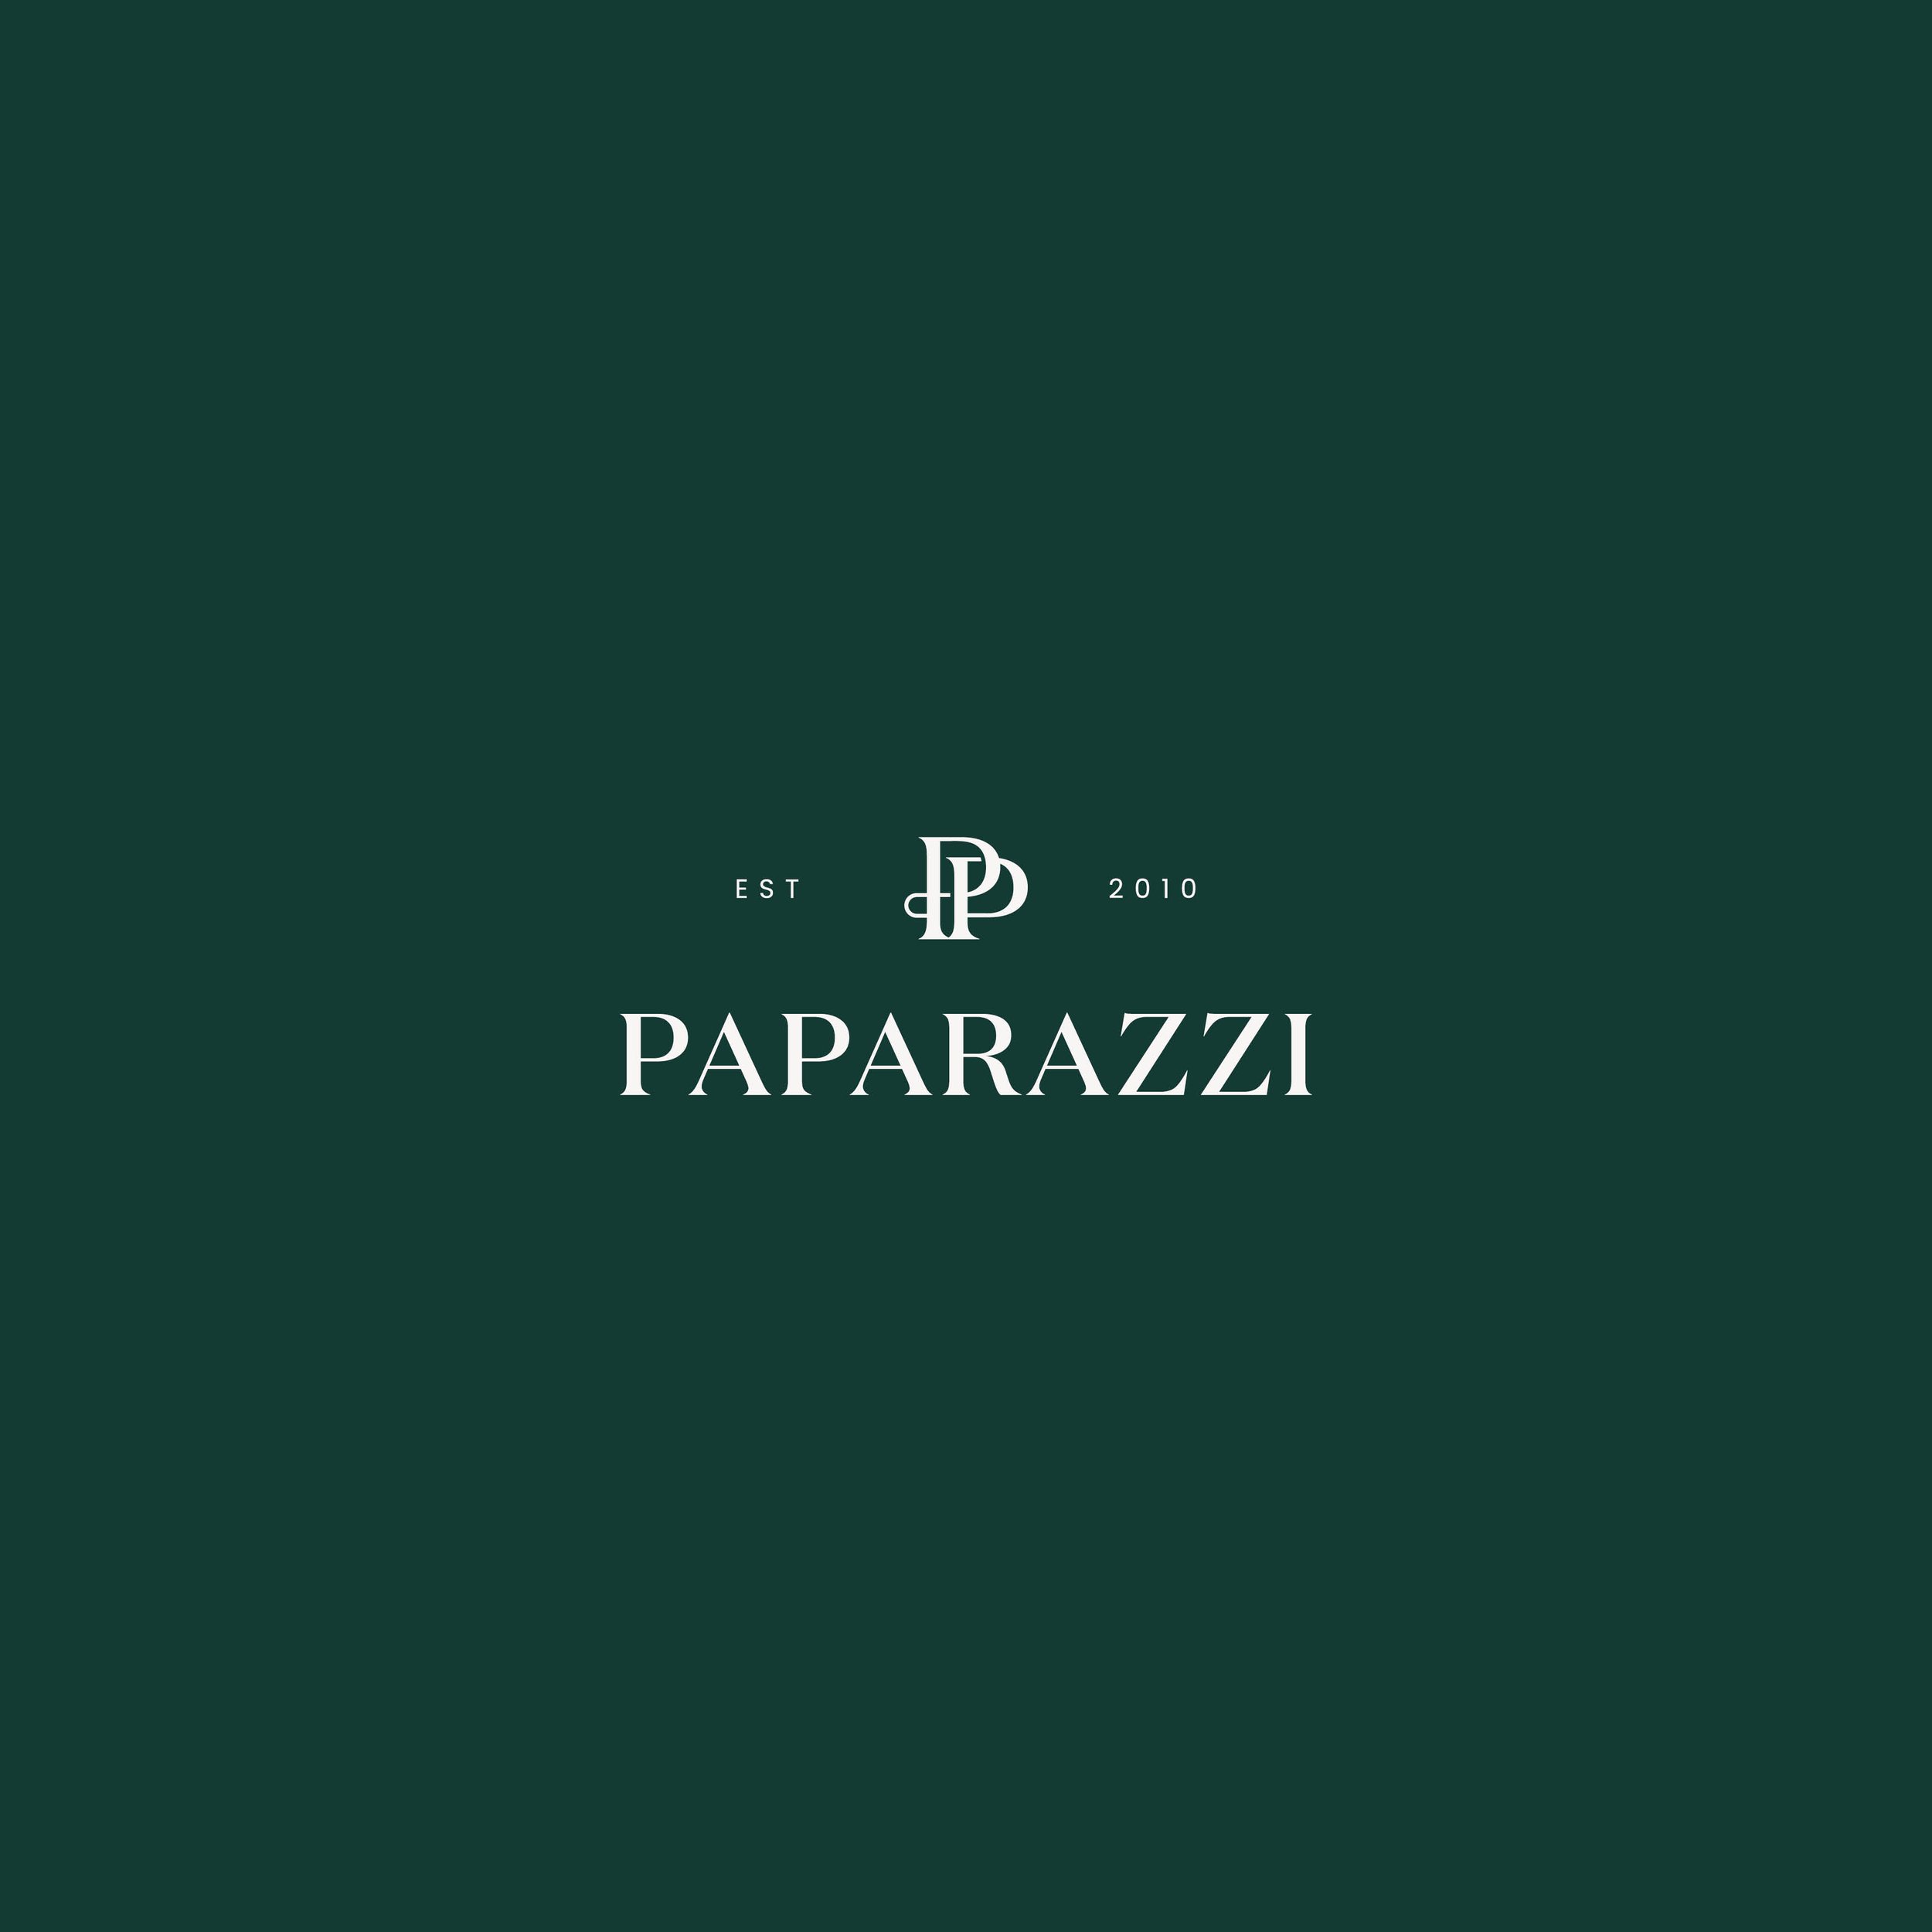 Paparazzi Logo and Brand Presentation V511.jpg